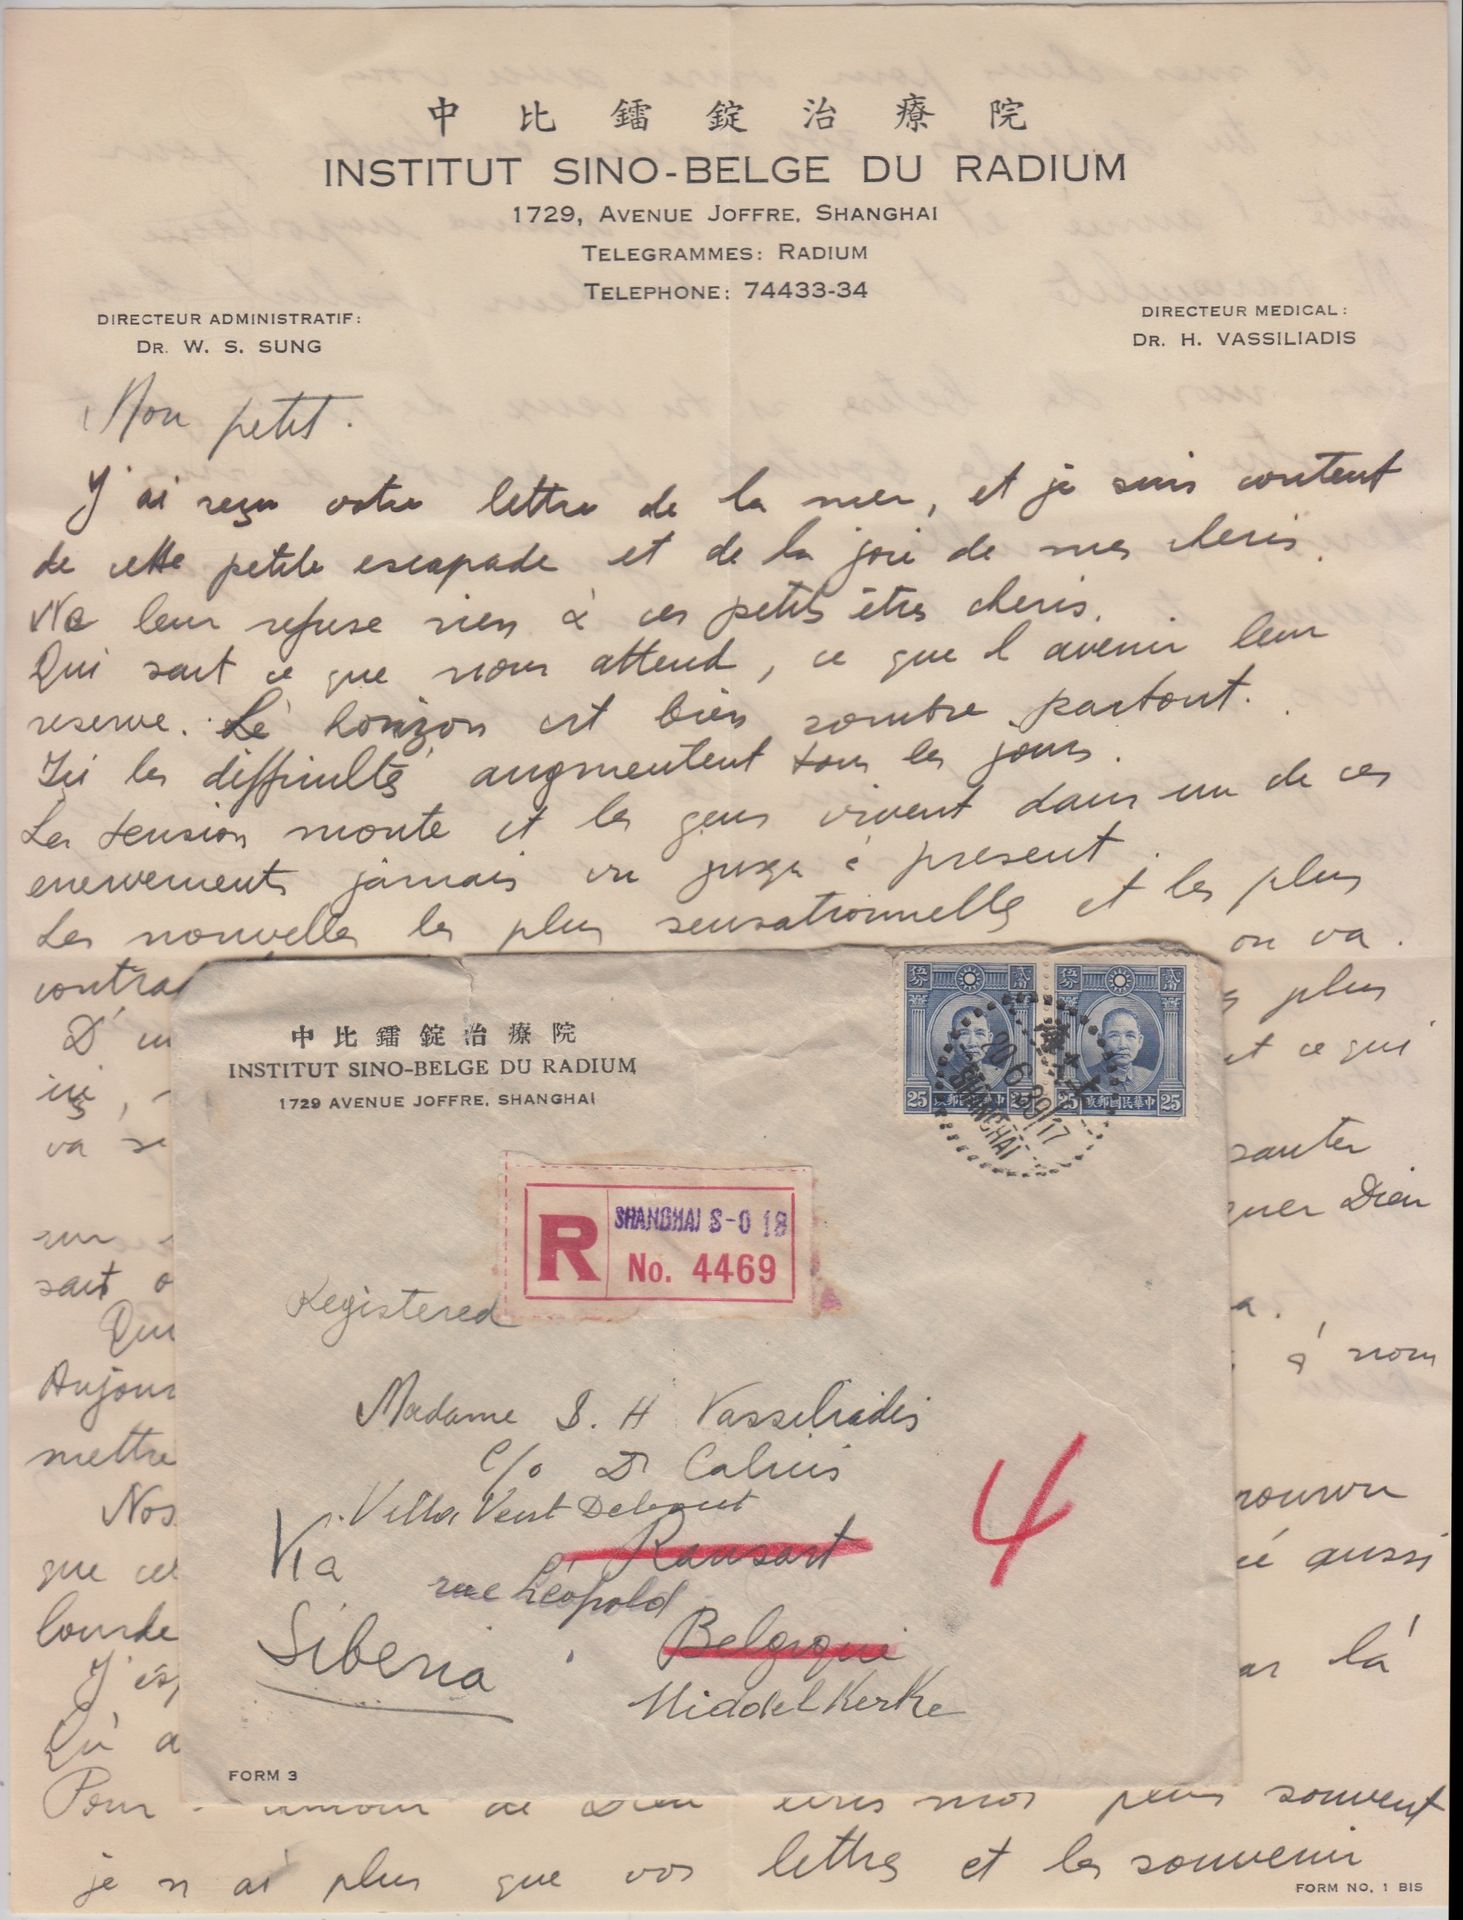 Correspondance de l'Institut Sino-Belge du Radium CHINE, 1939

Correspondance de&hellip;